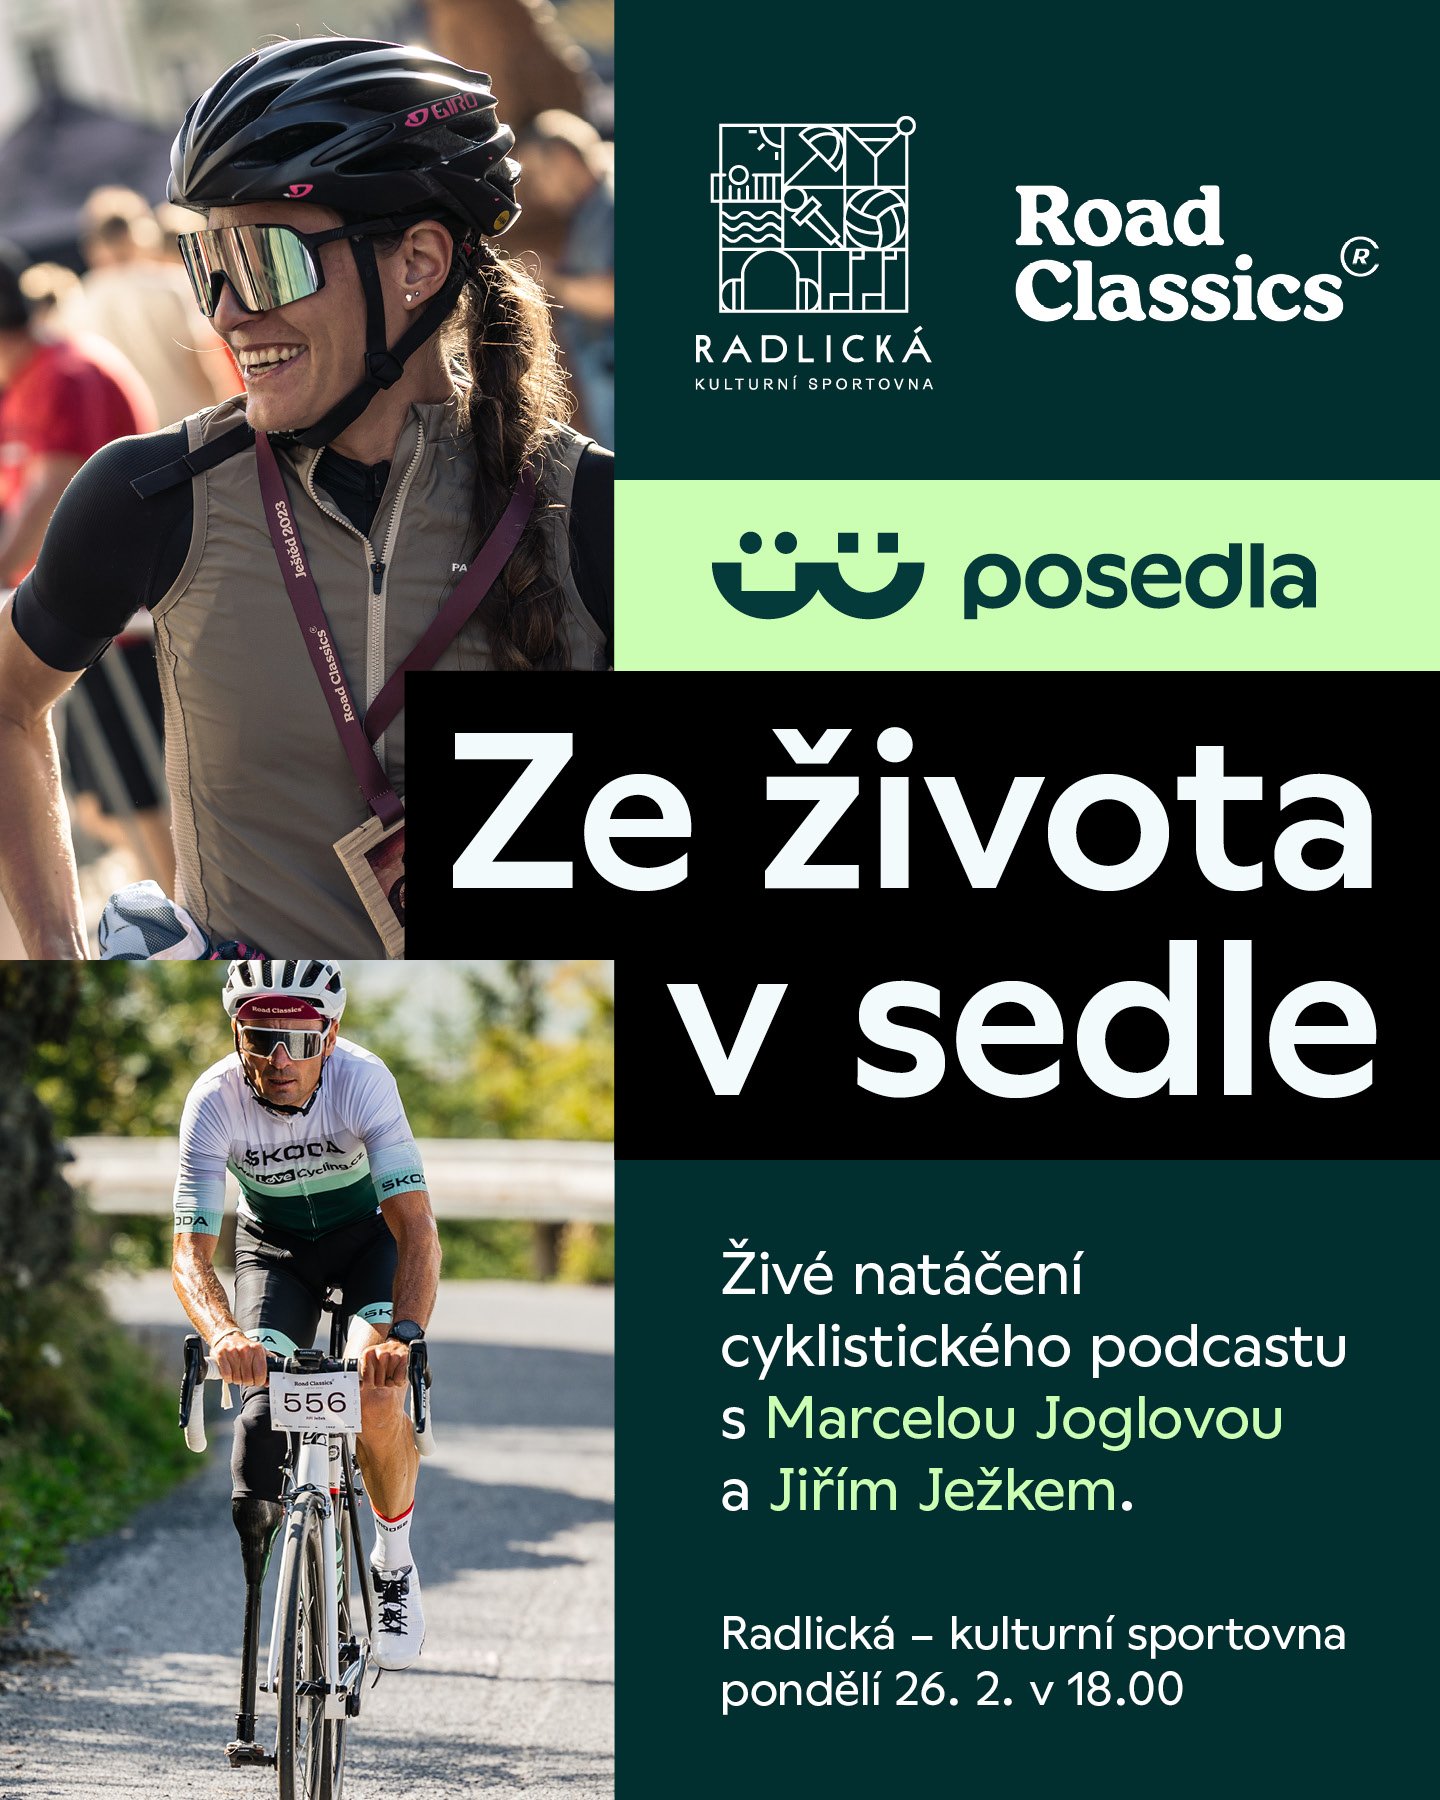 Jiří Ježek bude hostem natáčení podcastu Ze života v sedle | Road Classics